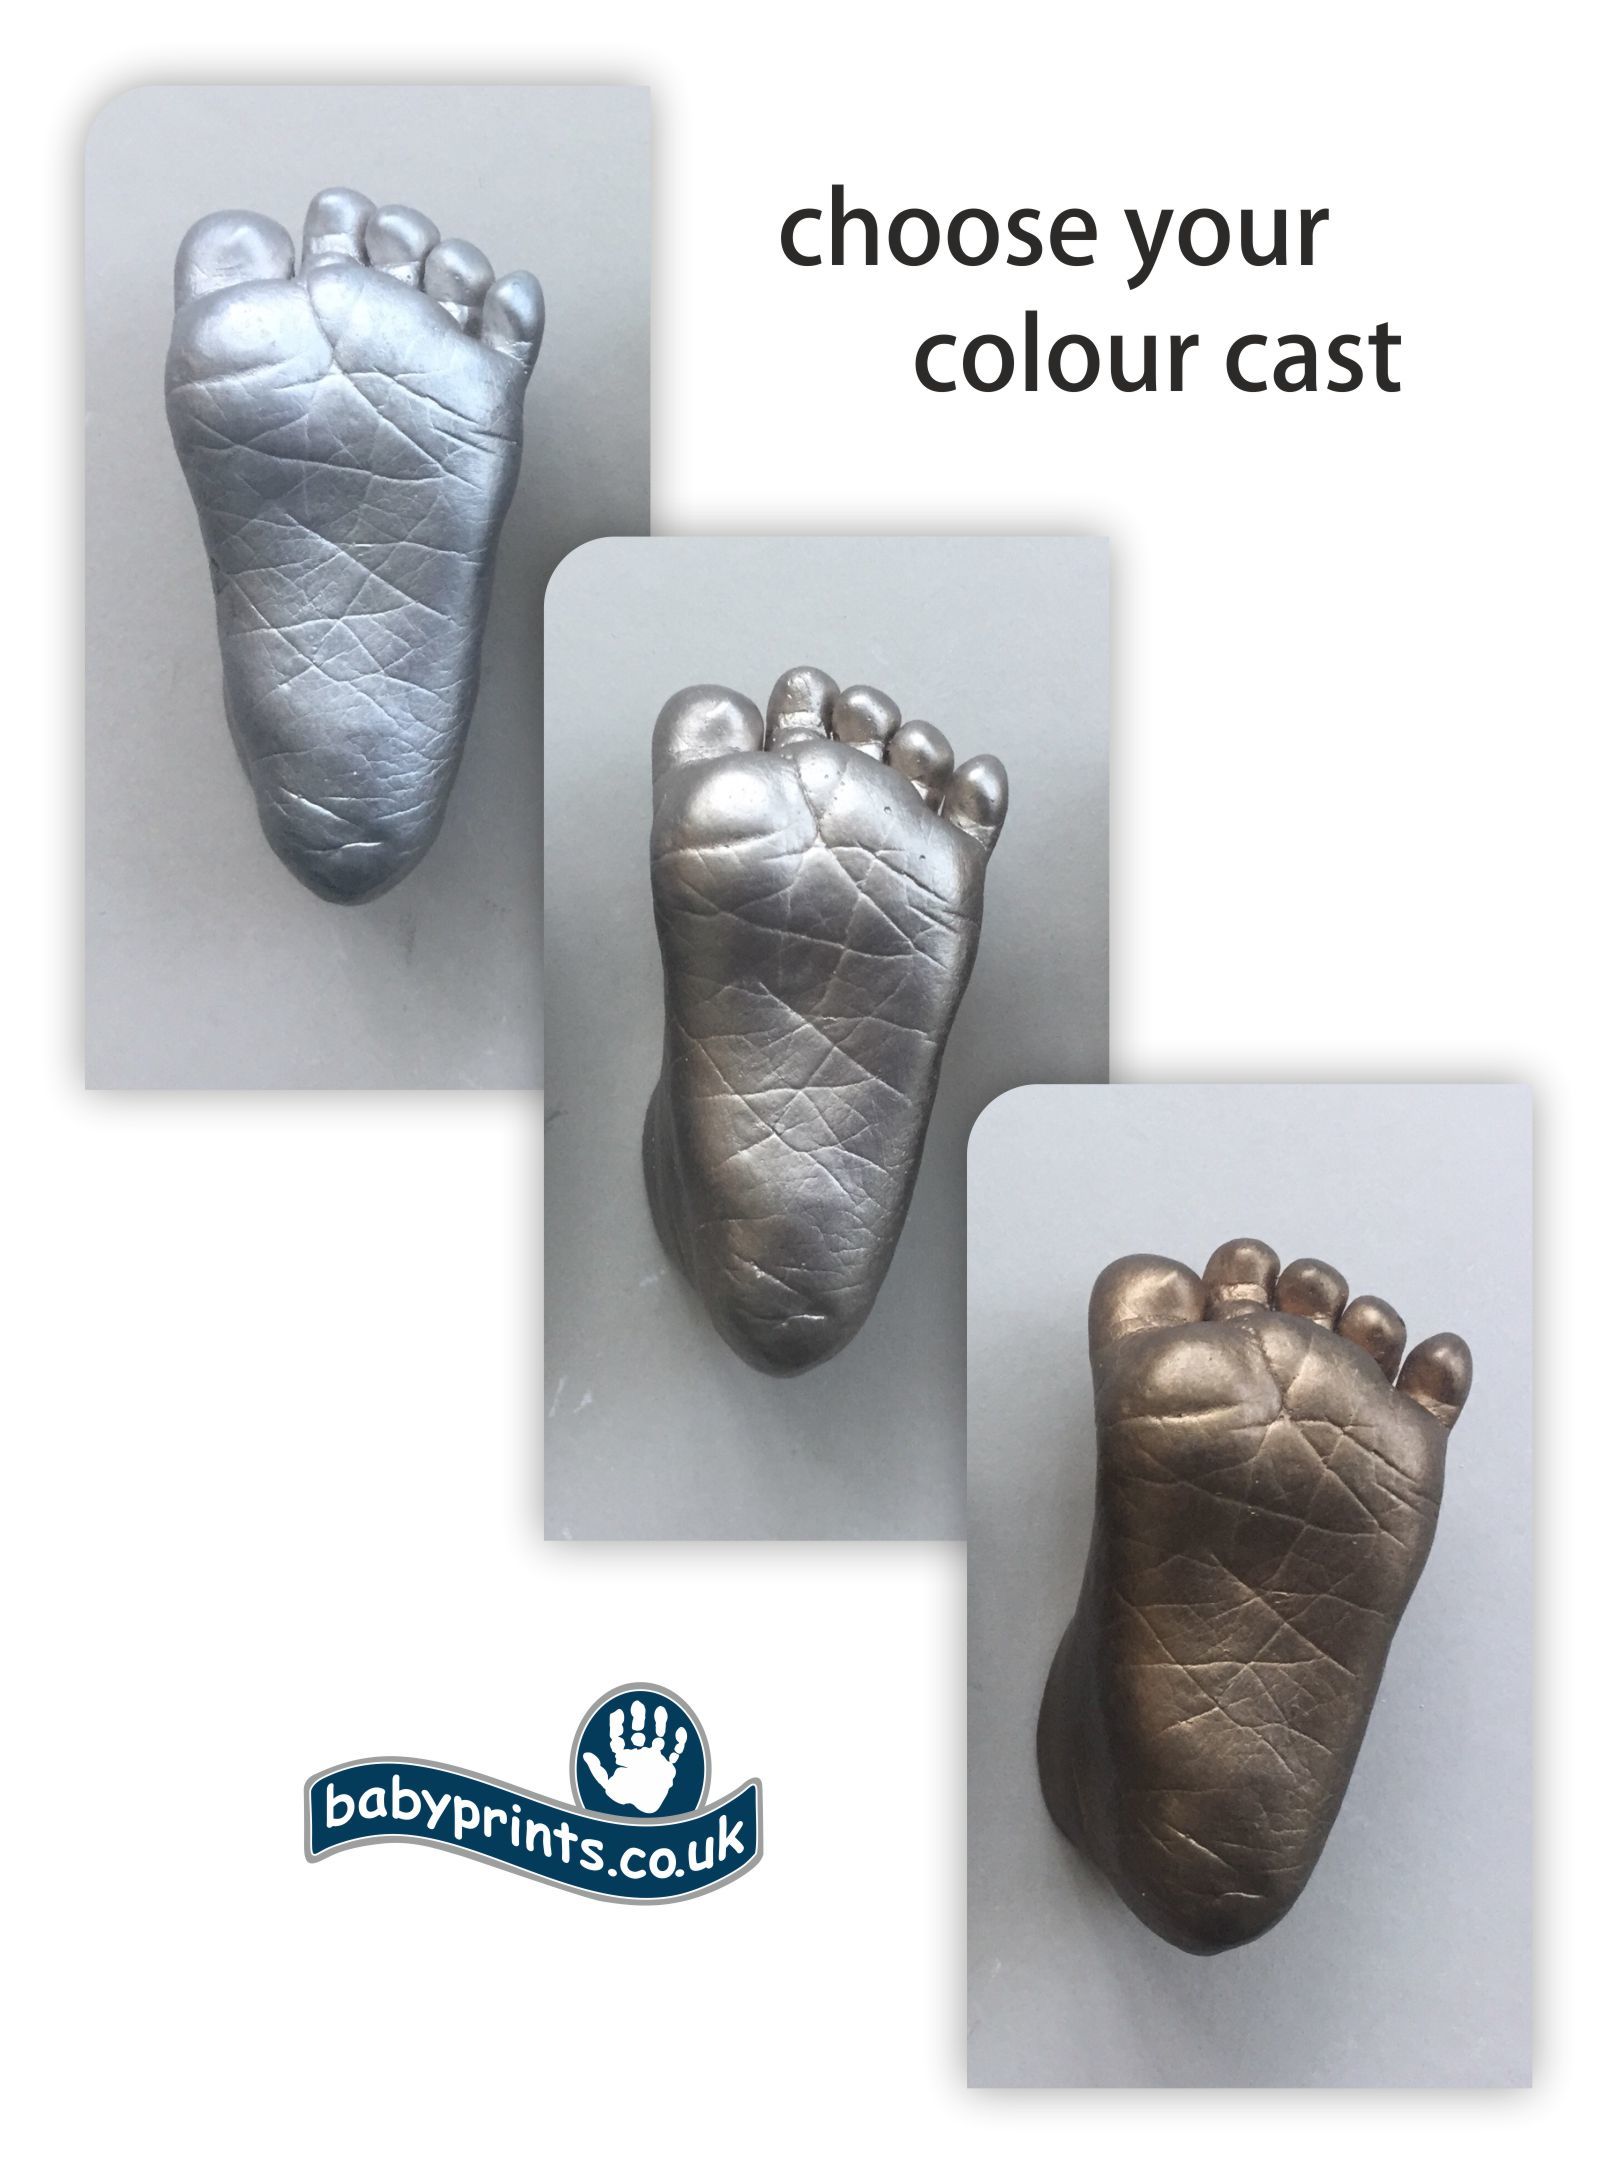 Choose your colour cast